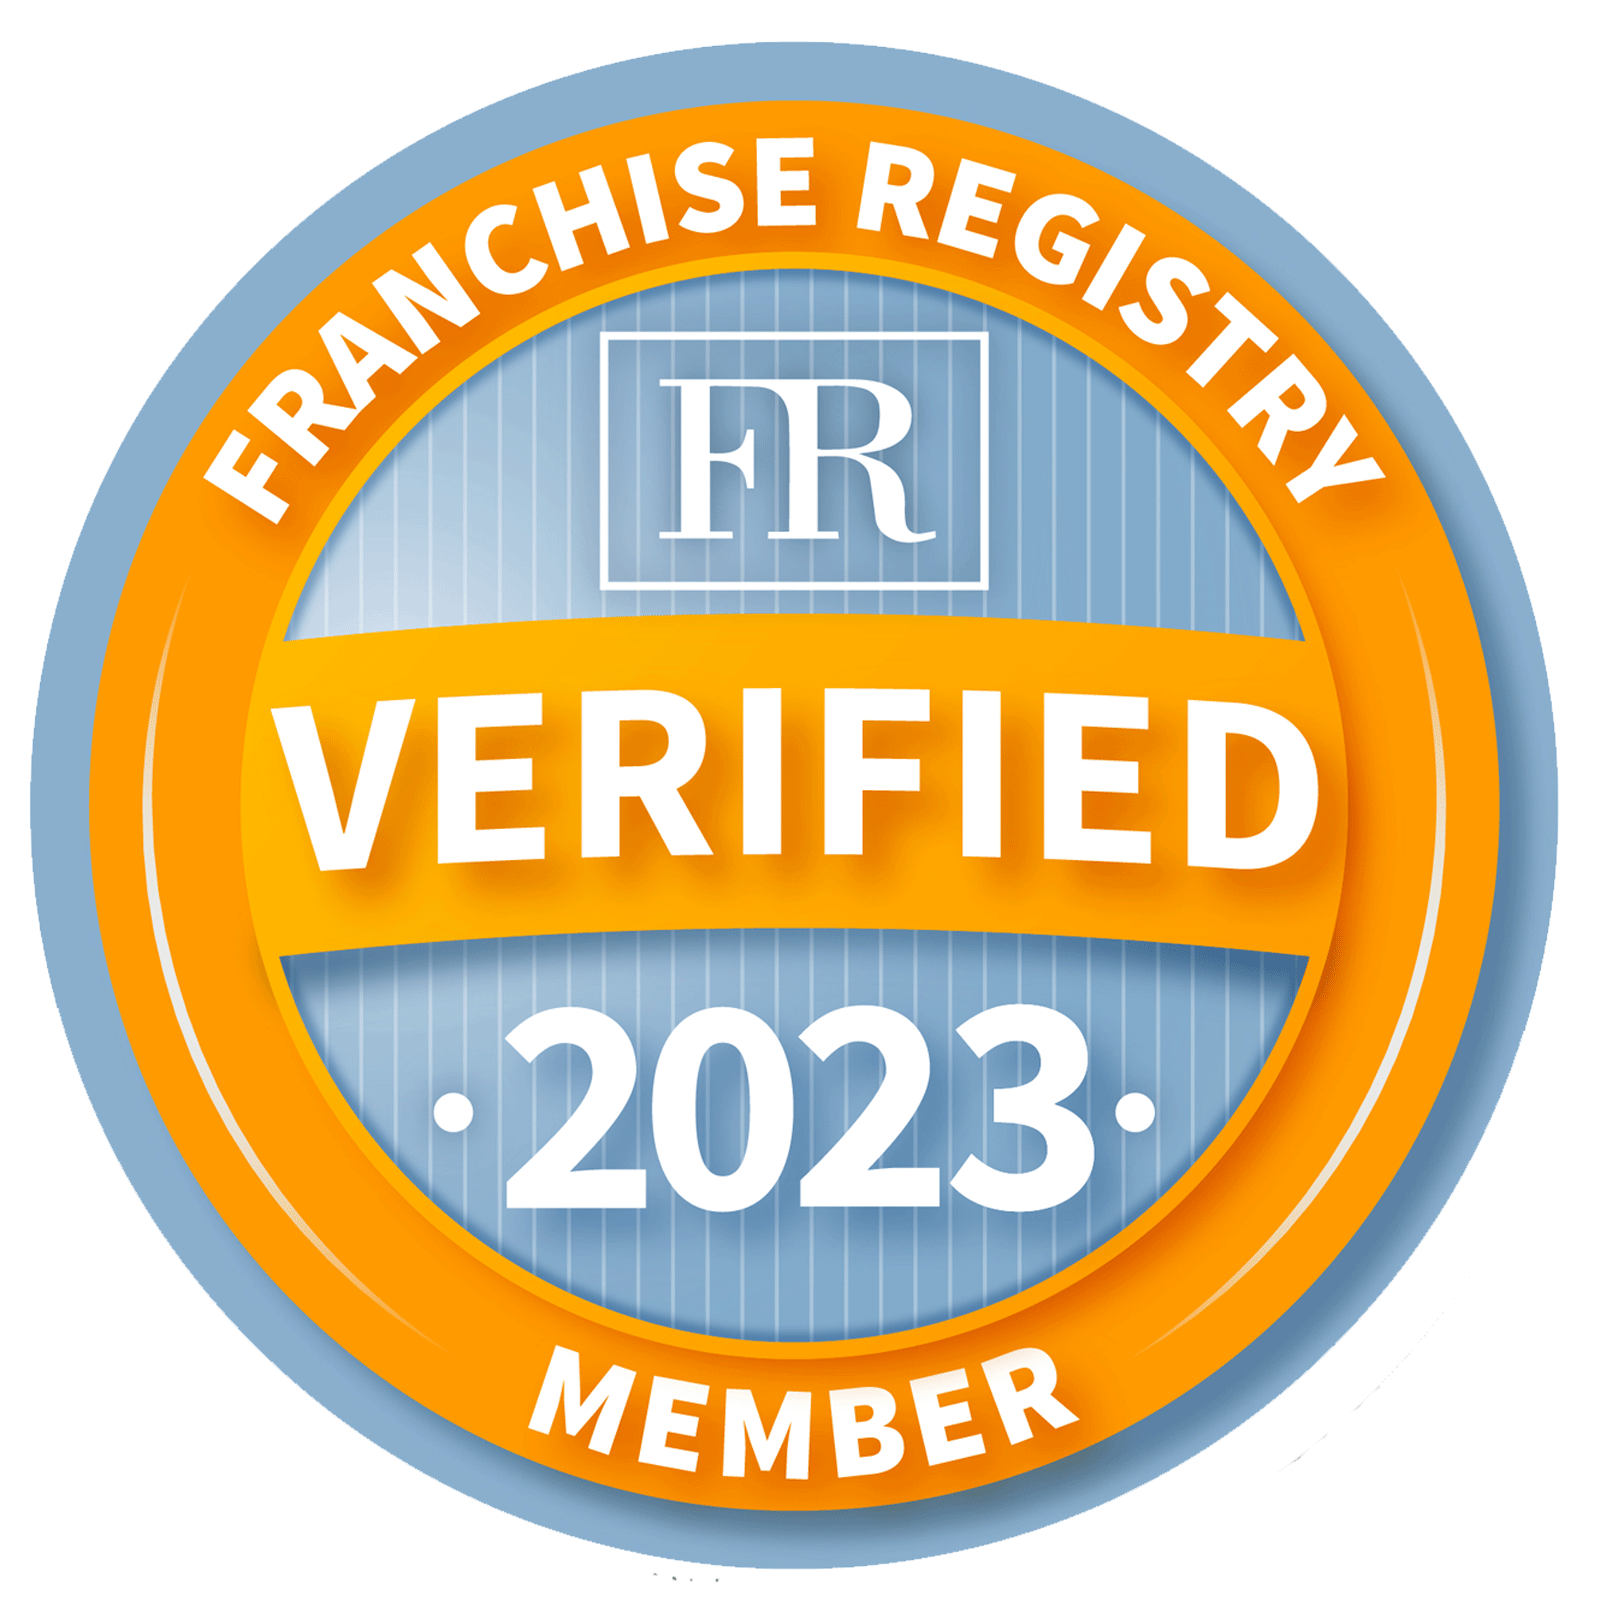 Franchise Verified Member 2023